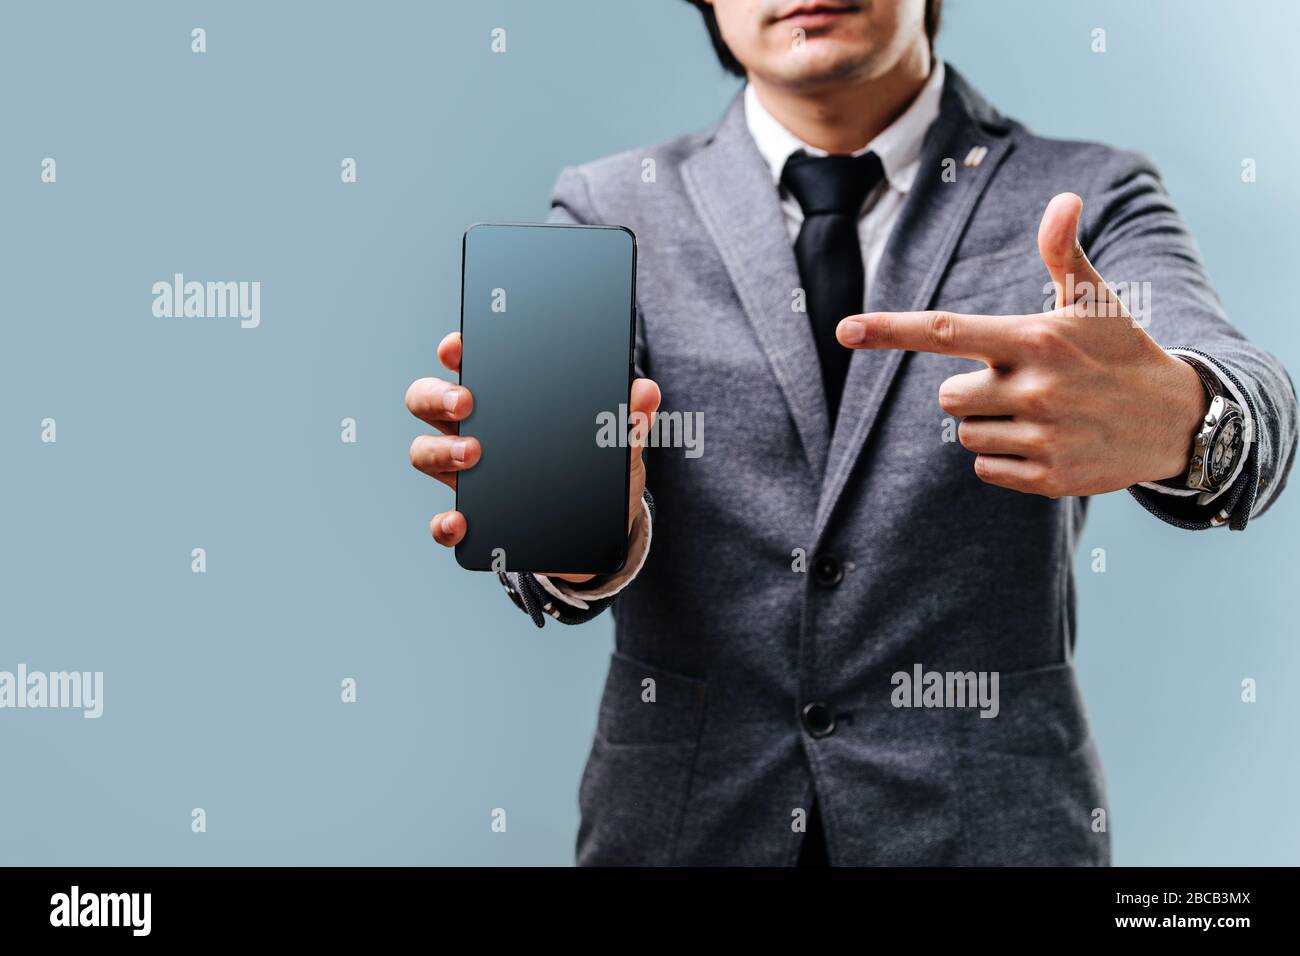 El joven sostiene el teléfono en la mano y señala con el dedo a la pantalla Foto de stock